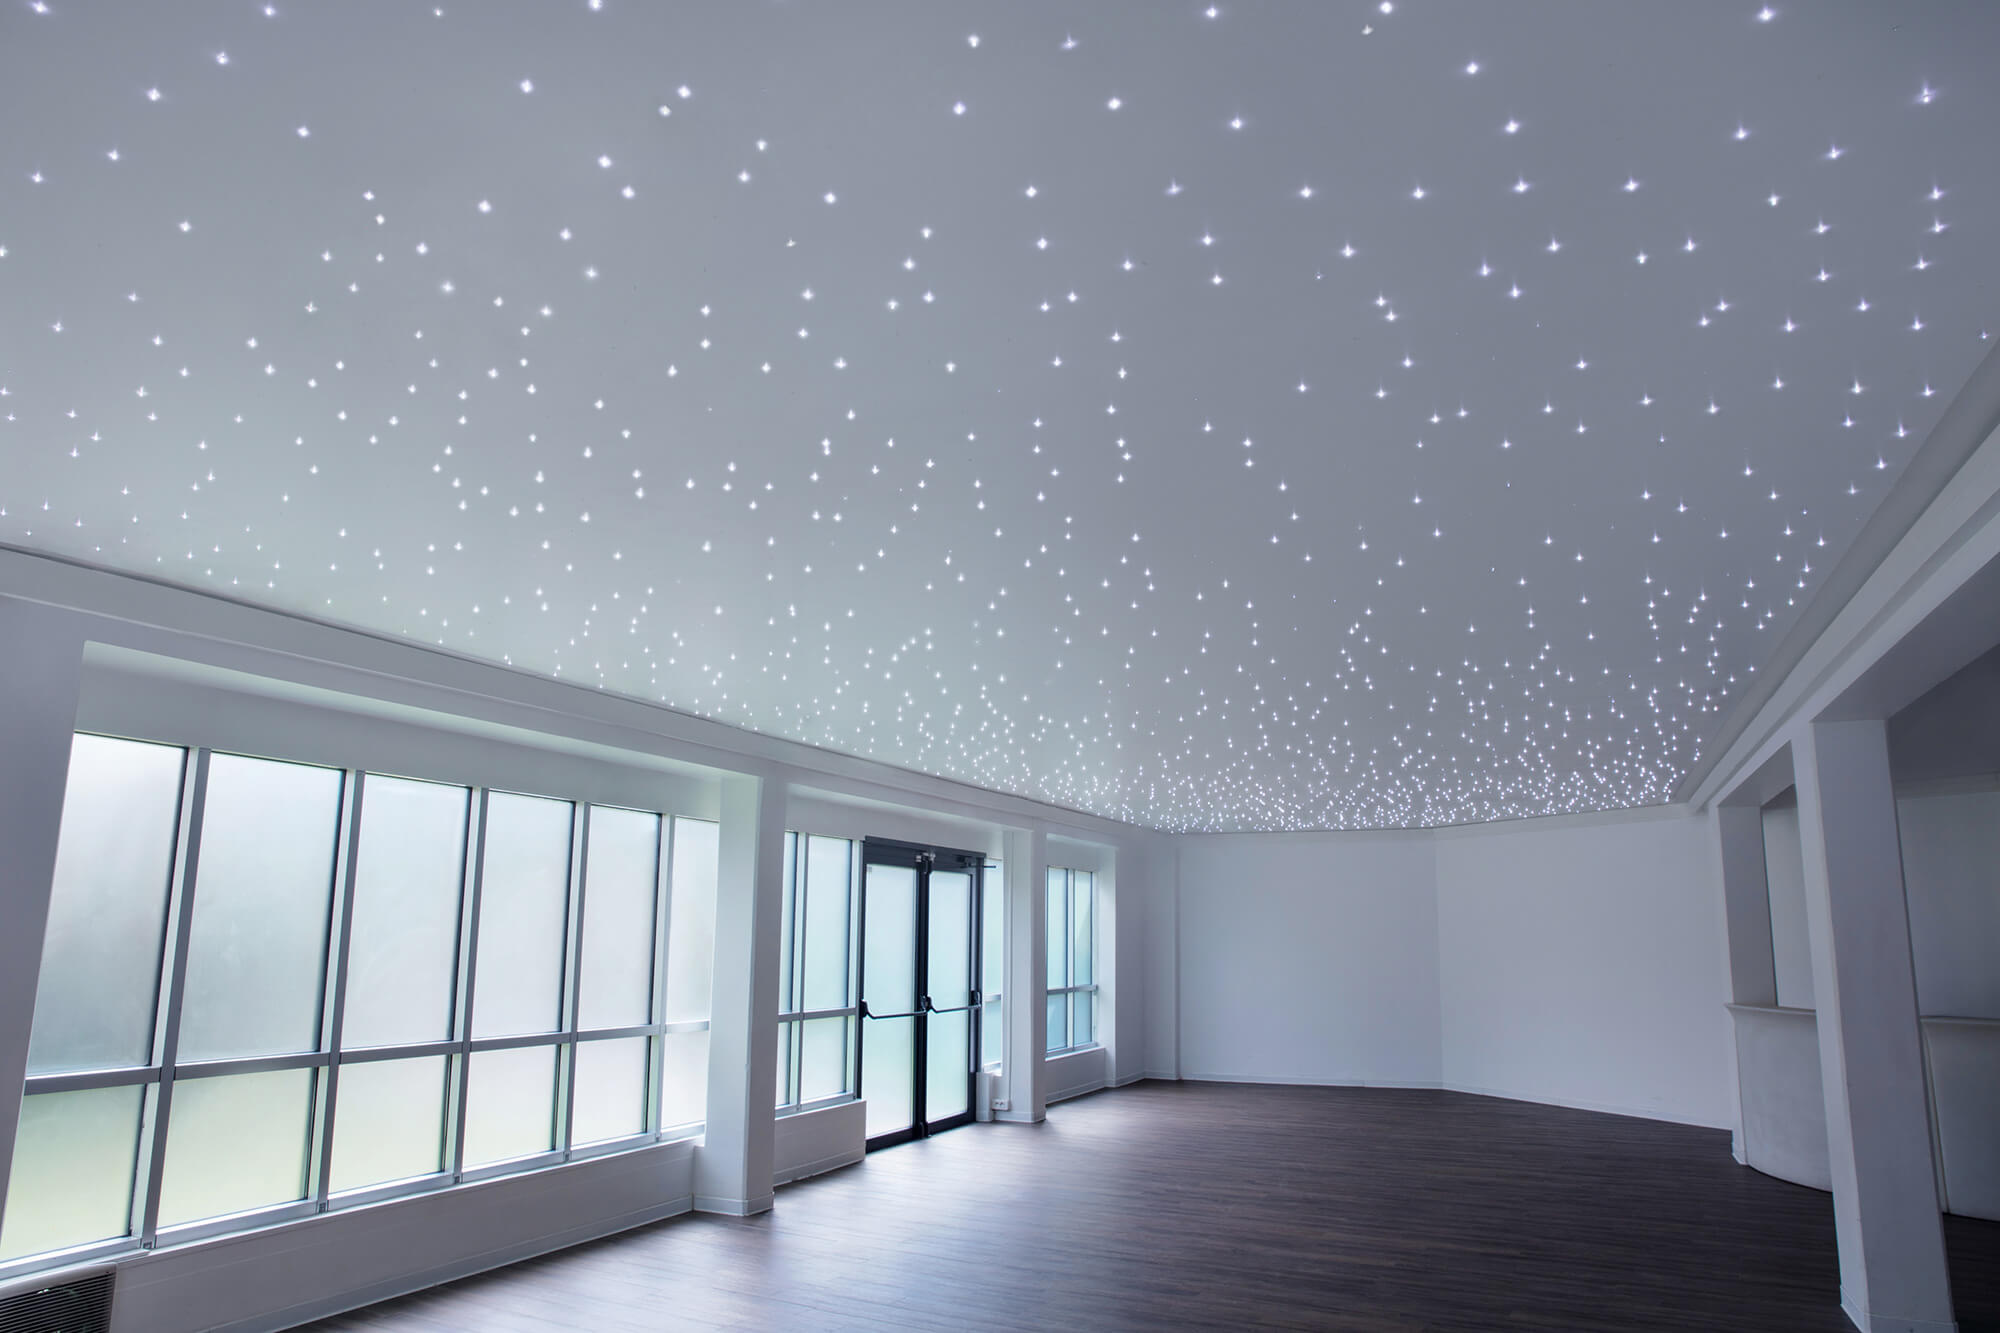 Sky ceiling LED panel - PLAFOND ÉTOILÉ - Semeur d'étoiles - for